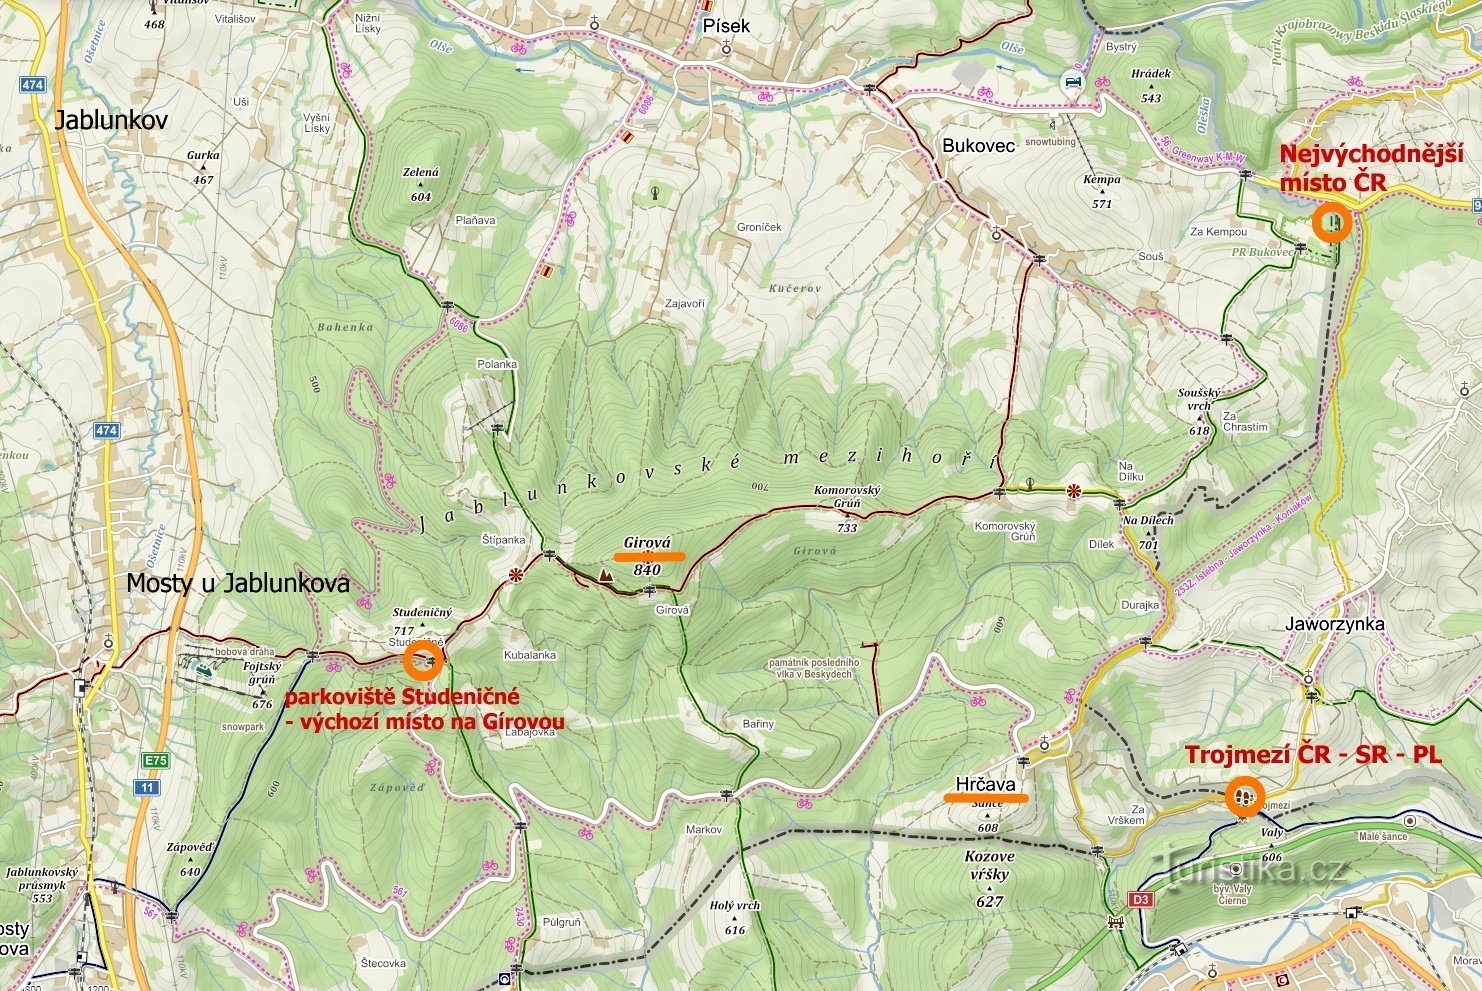 mapa odwiedzanych miejsc: najbardziej wysunięty na wschód punkt Czech, Hrczawa - Trojmezí, Jablunkovské m